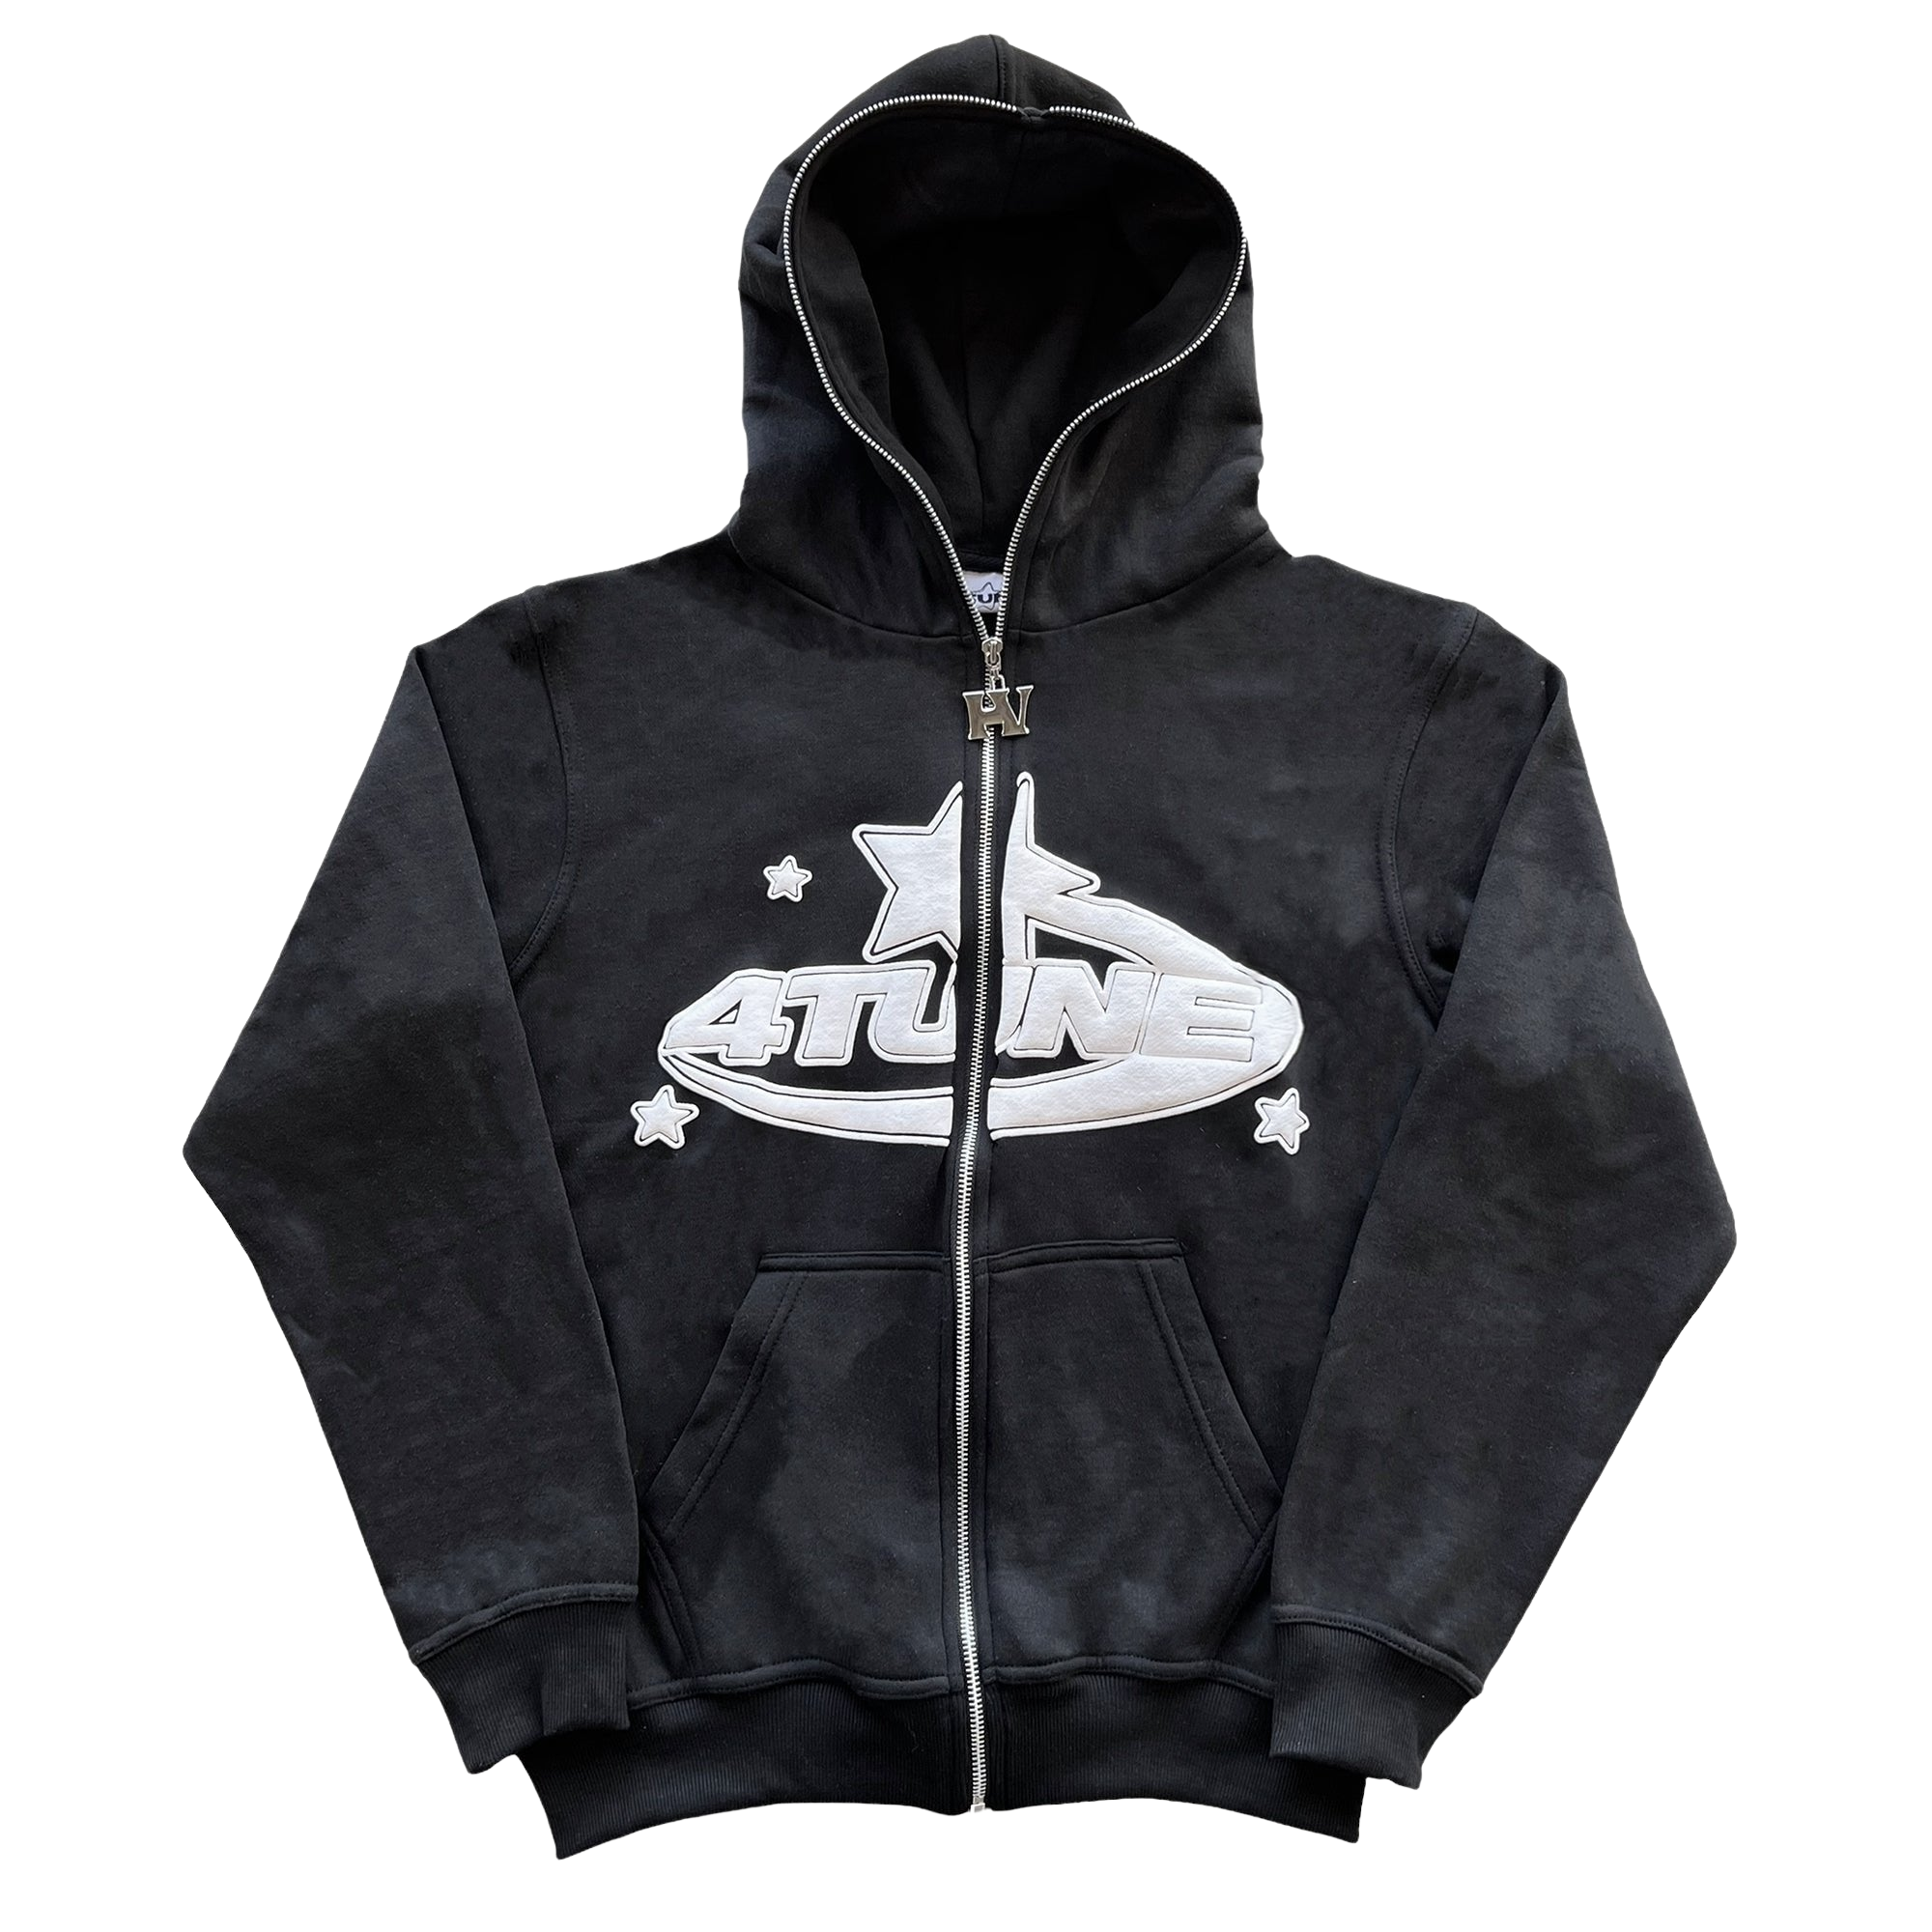 4tune full zip hoodie - black